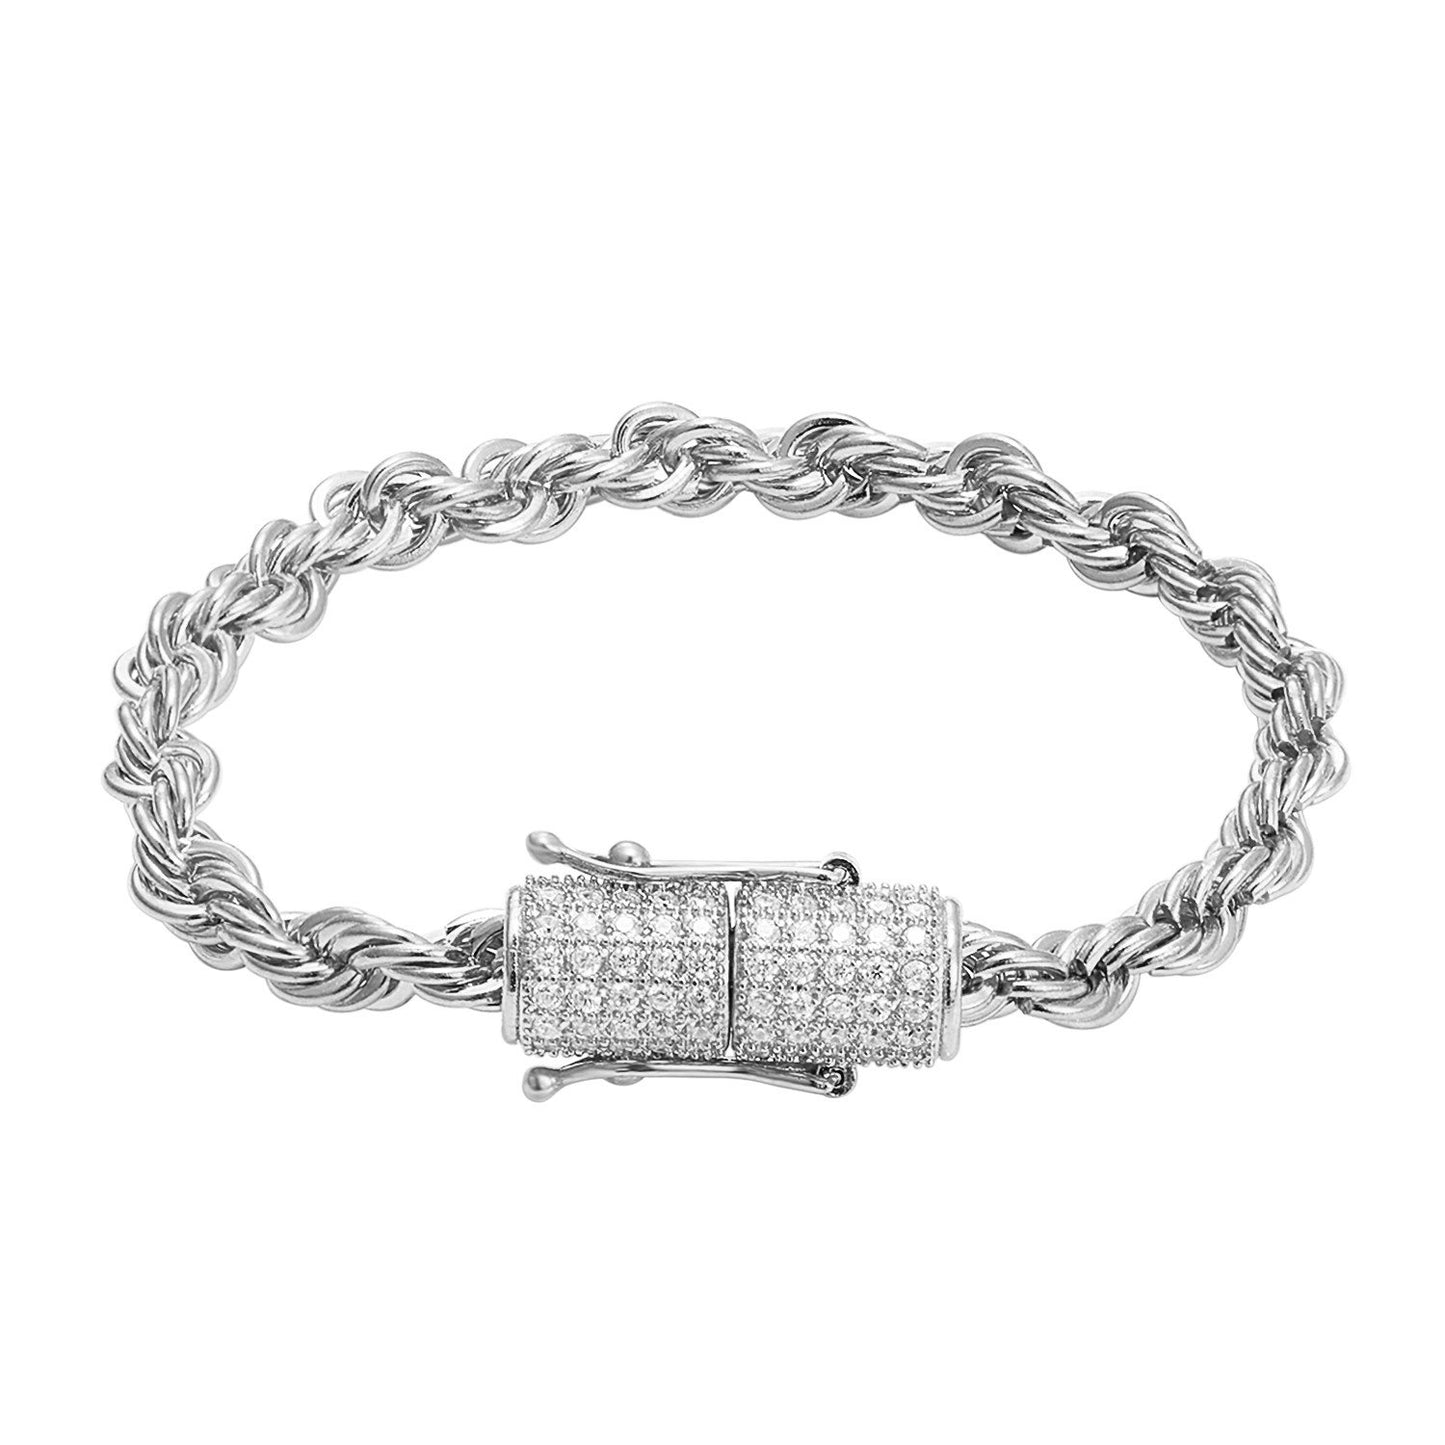 Stainless Steel 14k White Gold Finish 6mm Rope Bracelet Designer New Bling Lock